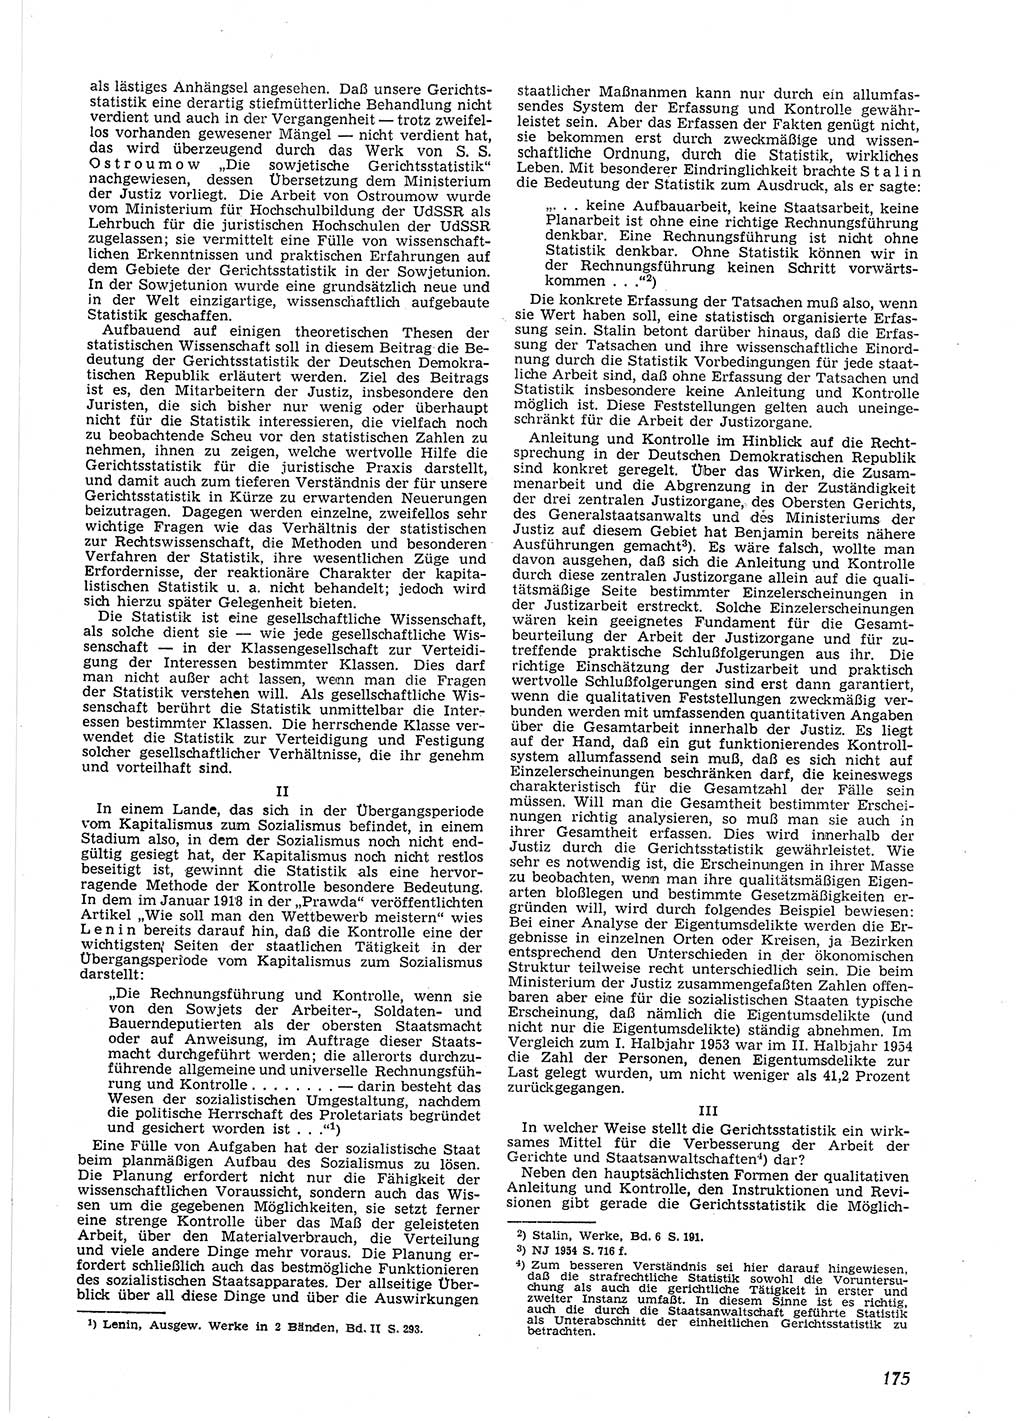 Neue Justiz (NJ), Zeitschrift für Recht und Rechtswissenschaft [Deutsche Demokratische Republik (DDR)], 9. Jahrgang 1955, Seite 175 (NJ DDR 1955, S. 175)